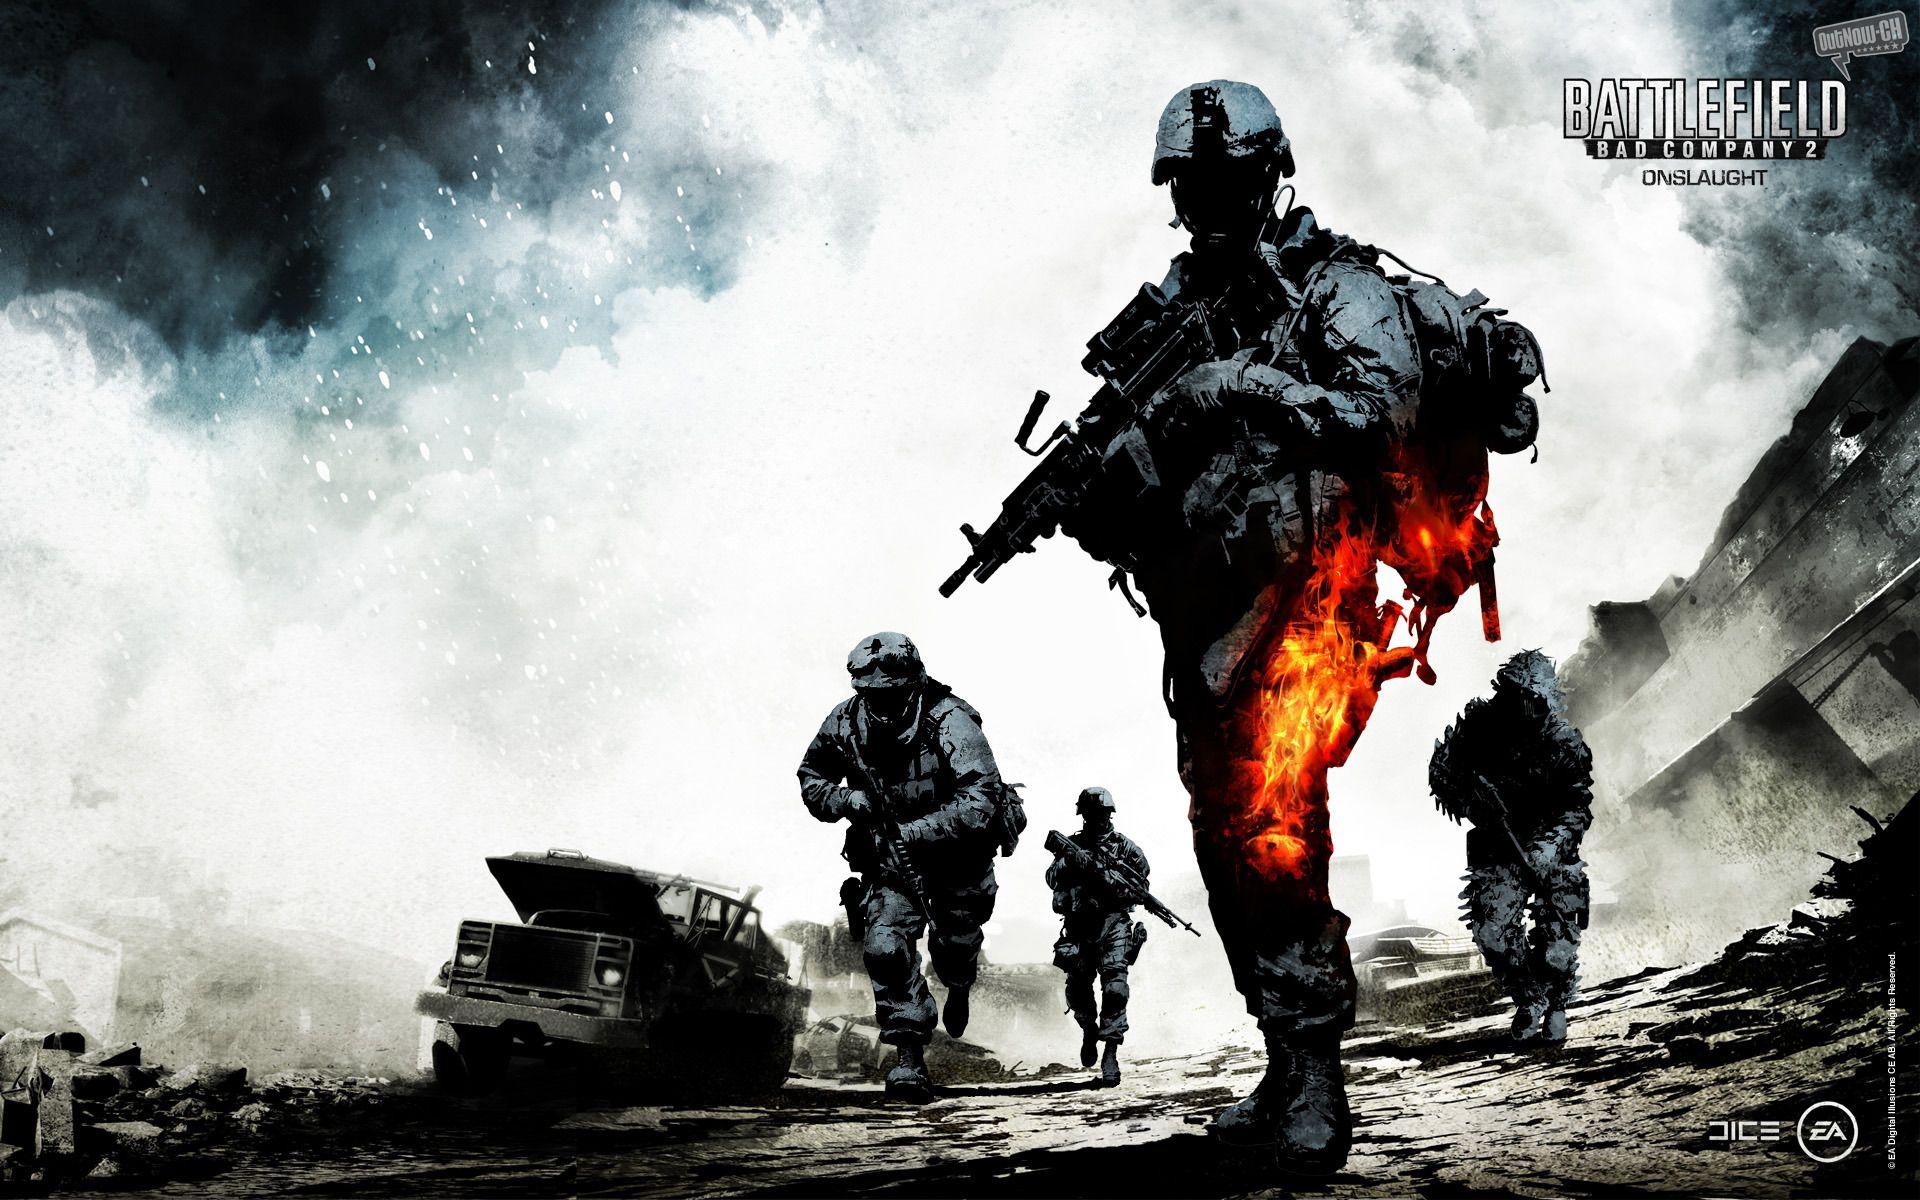 Battlefield 2 Wallpaper Full HD Wallpaper Search. GamesHD. Battlefield bad company, Battlefield bad company Battlefield